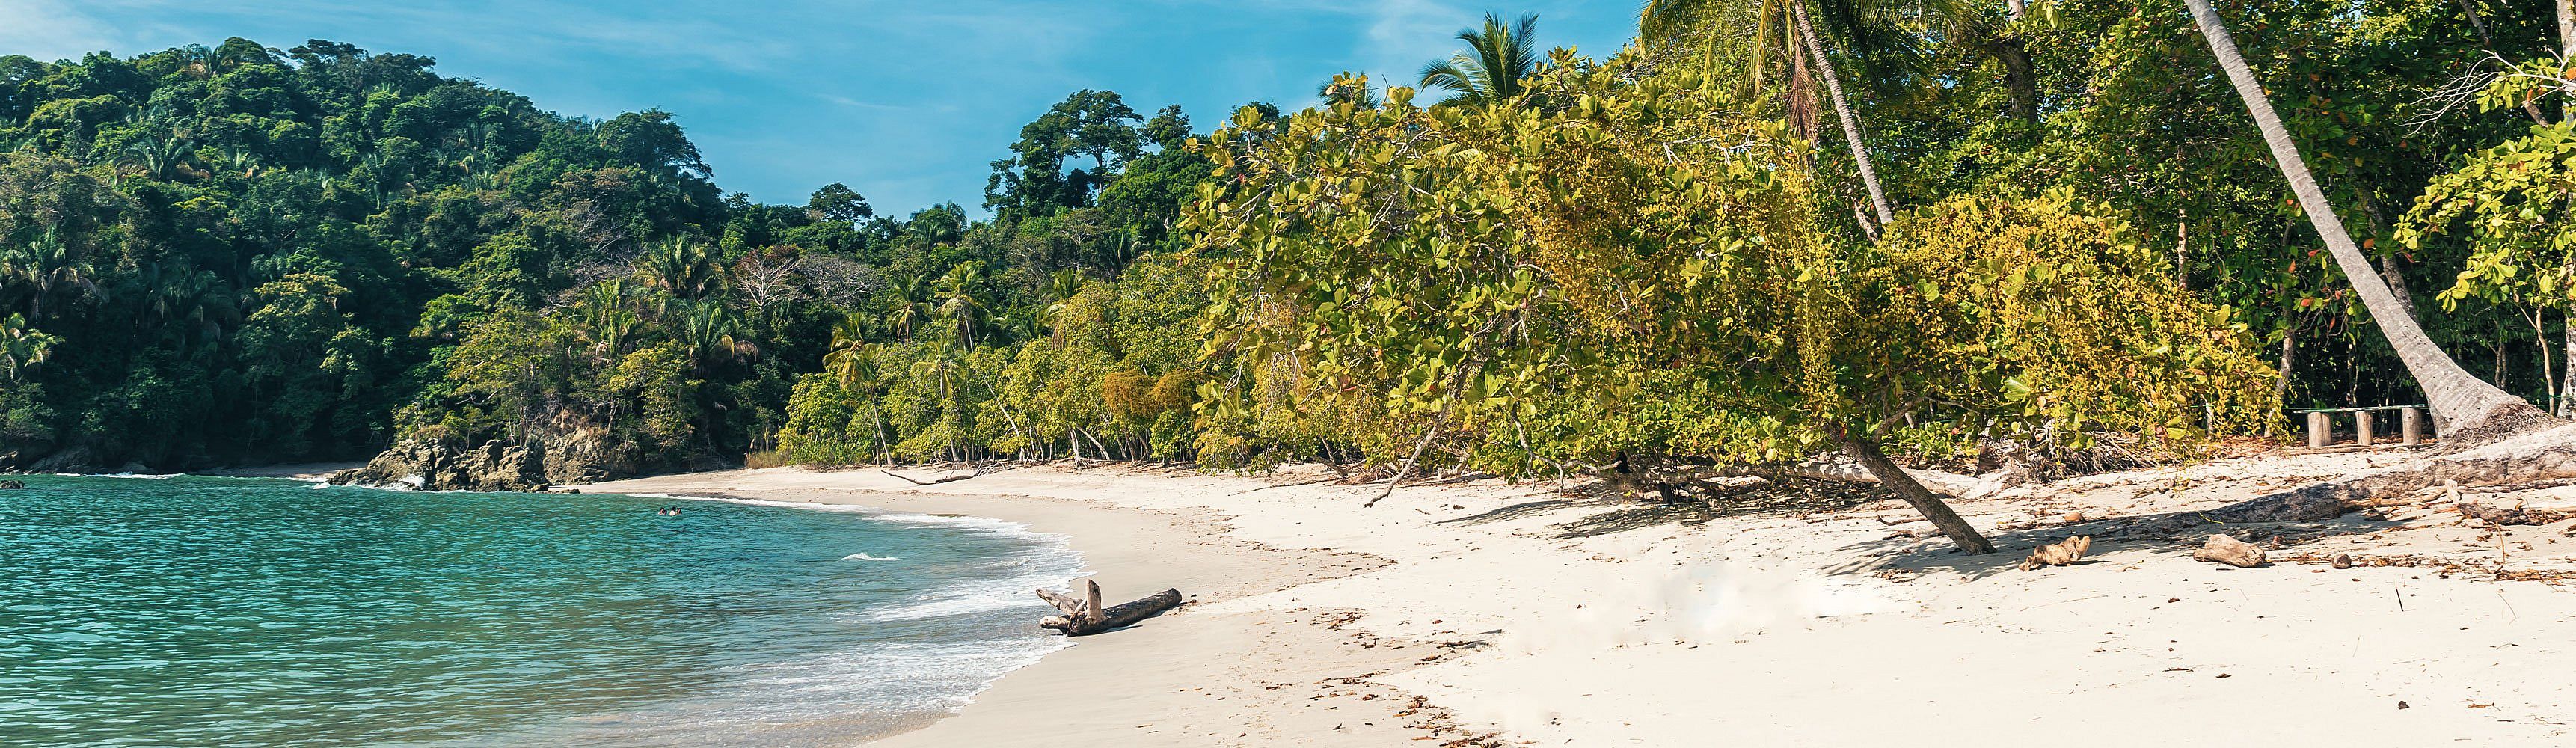 Voyage plage au Costa-Rica